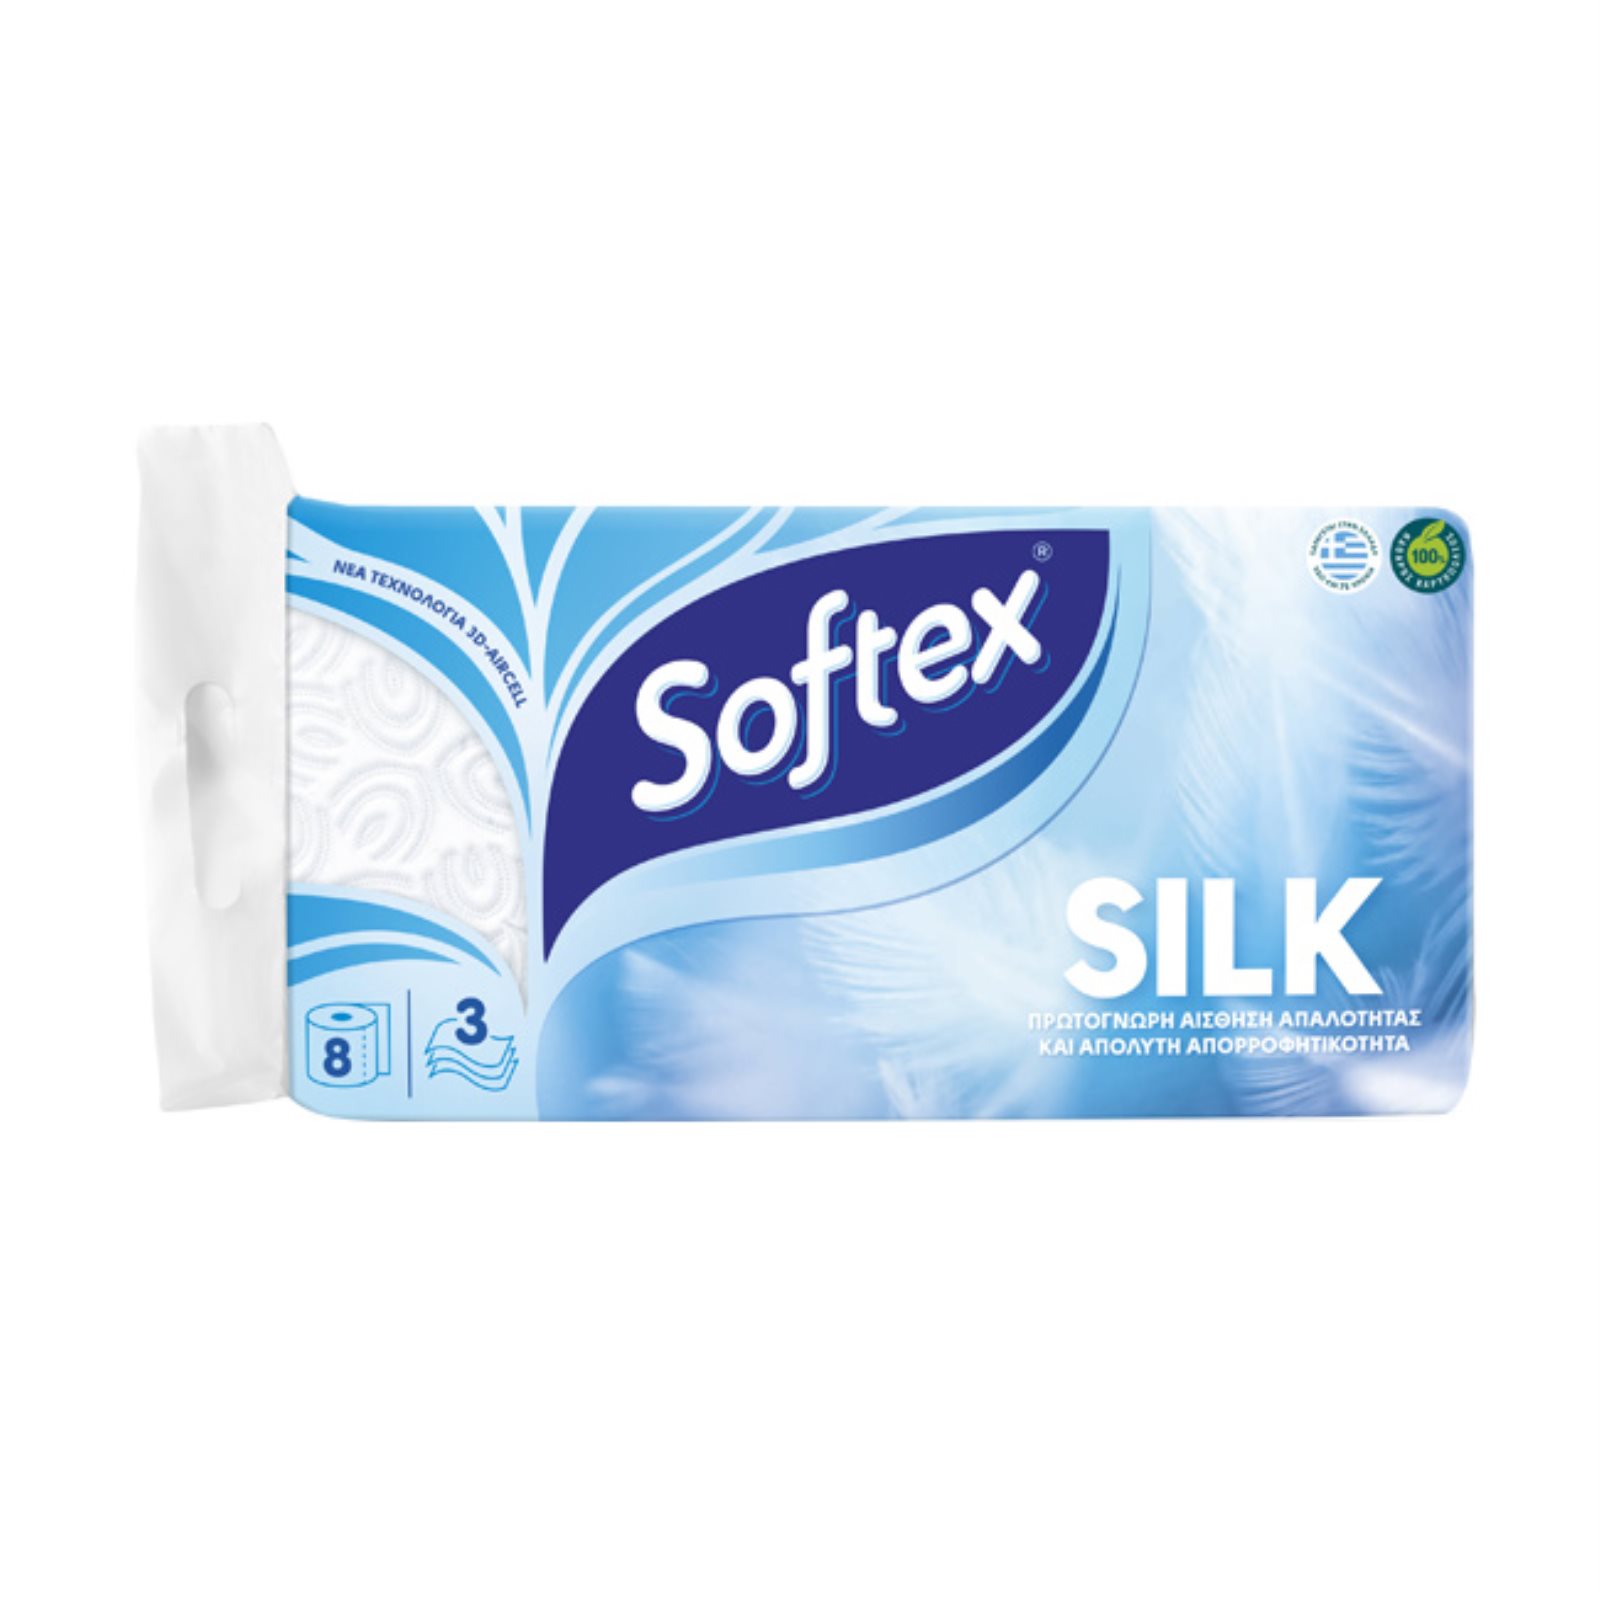 SOFTEX Χαρτί υγείας silk 3φυλλο 8 ρολά 760γρ.